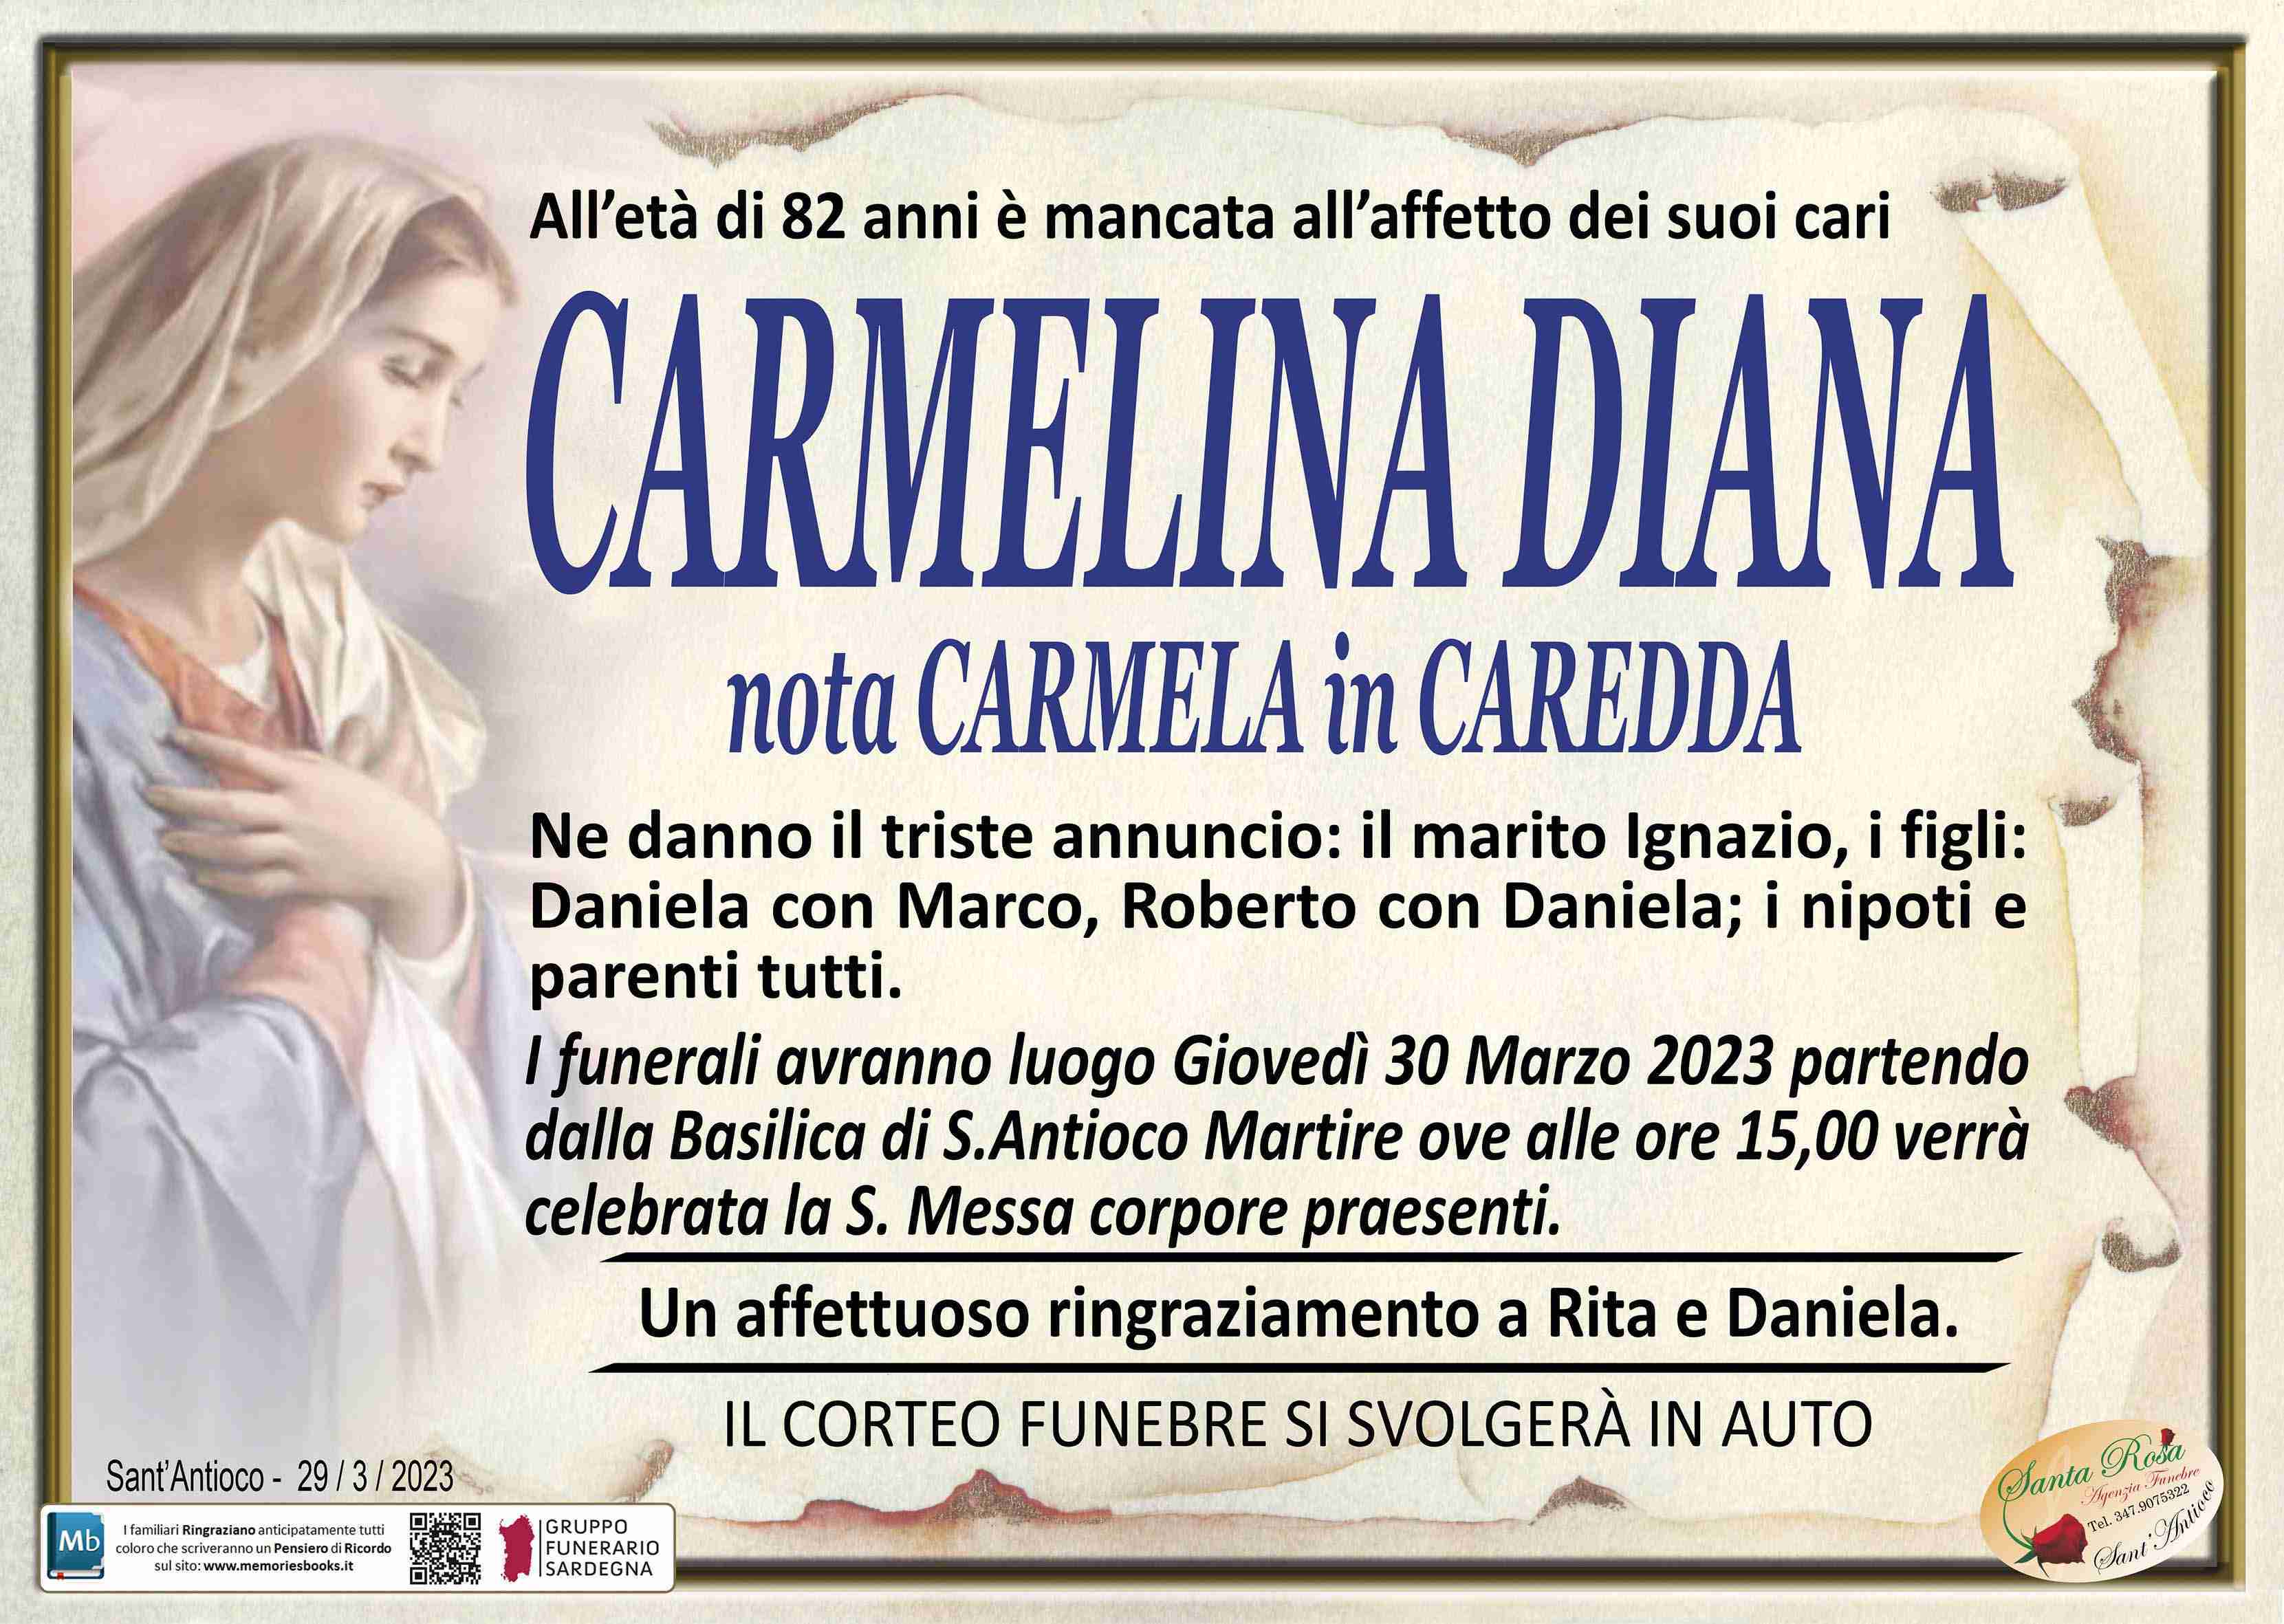 Carmelina Diana